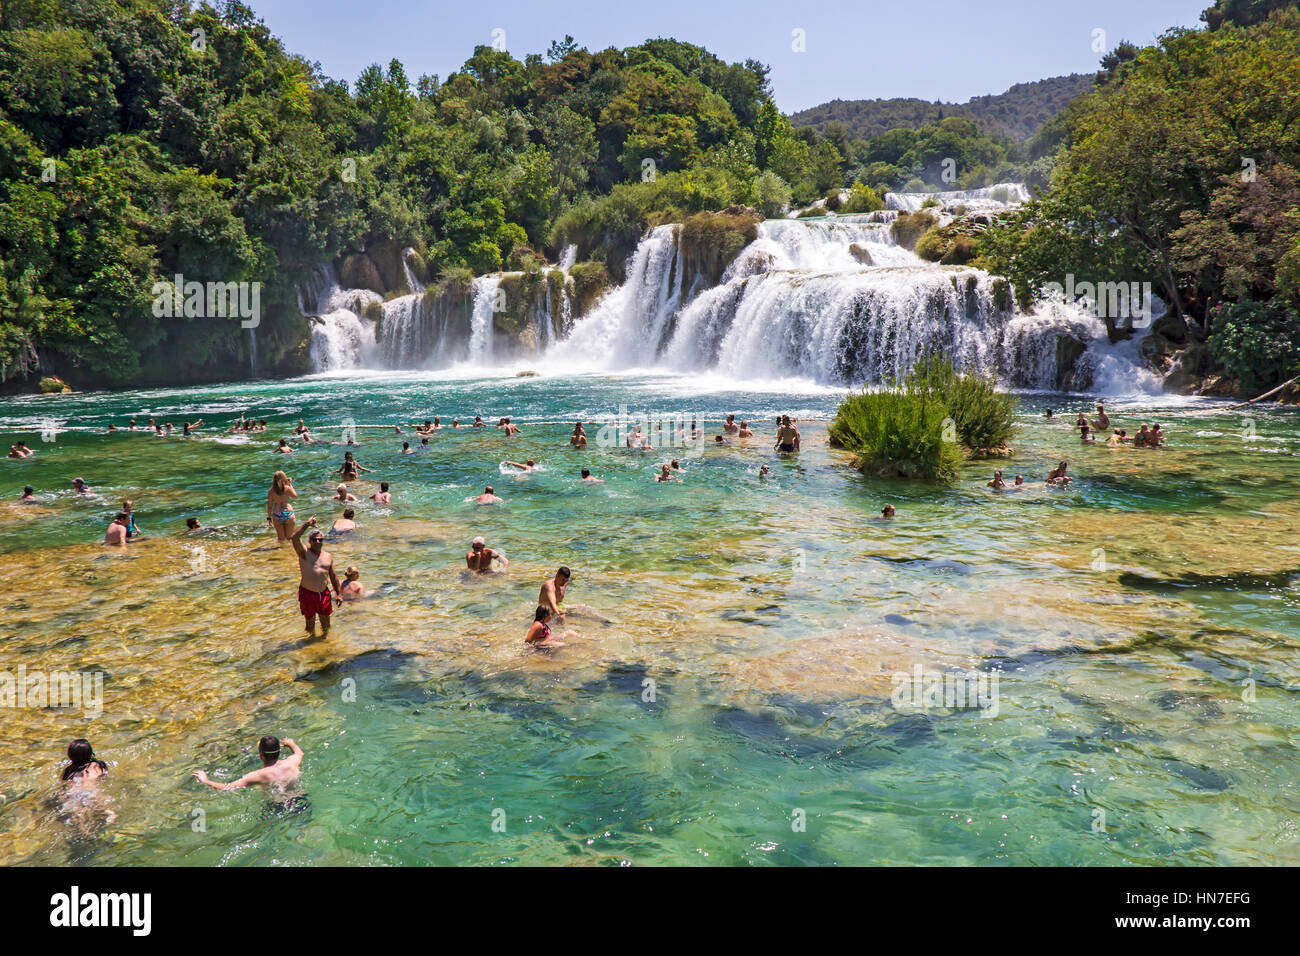 Le parc national de Krka, CROATIE - Juillet 10, 2016 : de nombreux touristes se baigner dans la rivière Krka dans le Parc National de Krka en Croatie. C'est l'un des plus famo Banque D'Images